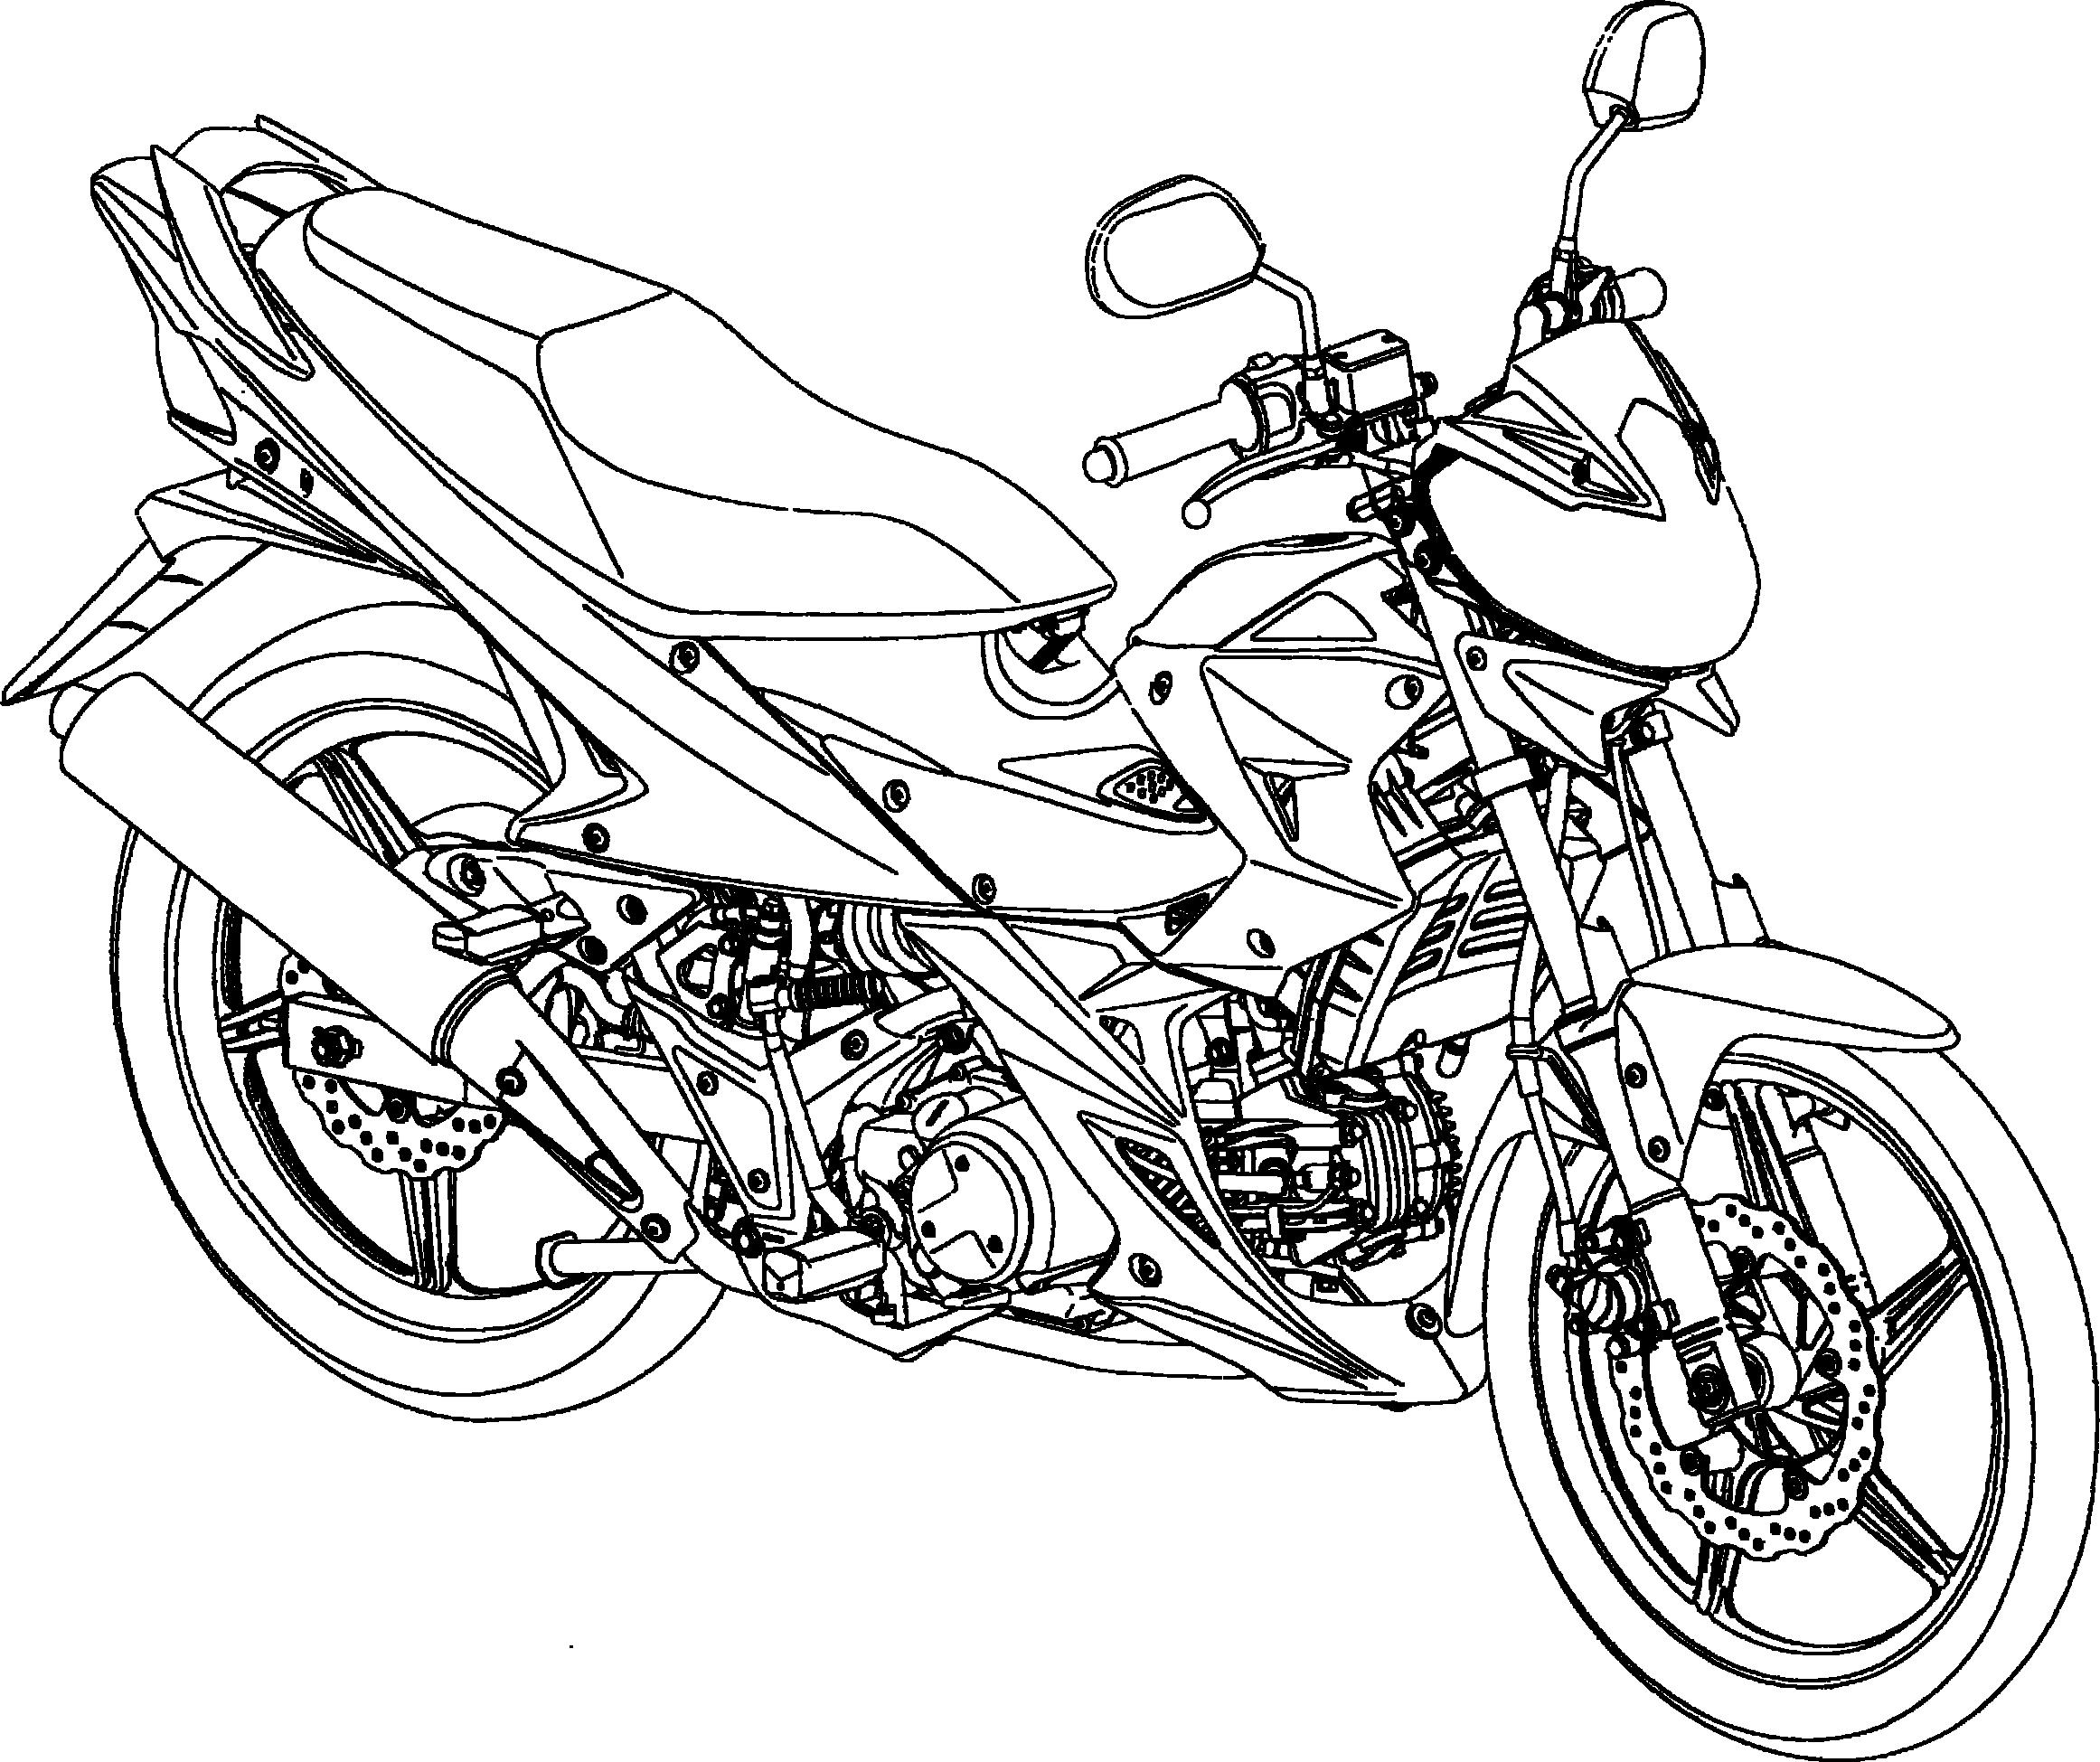 山地摩托车简笔画图片